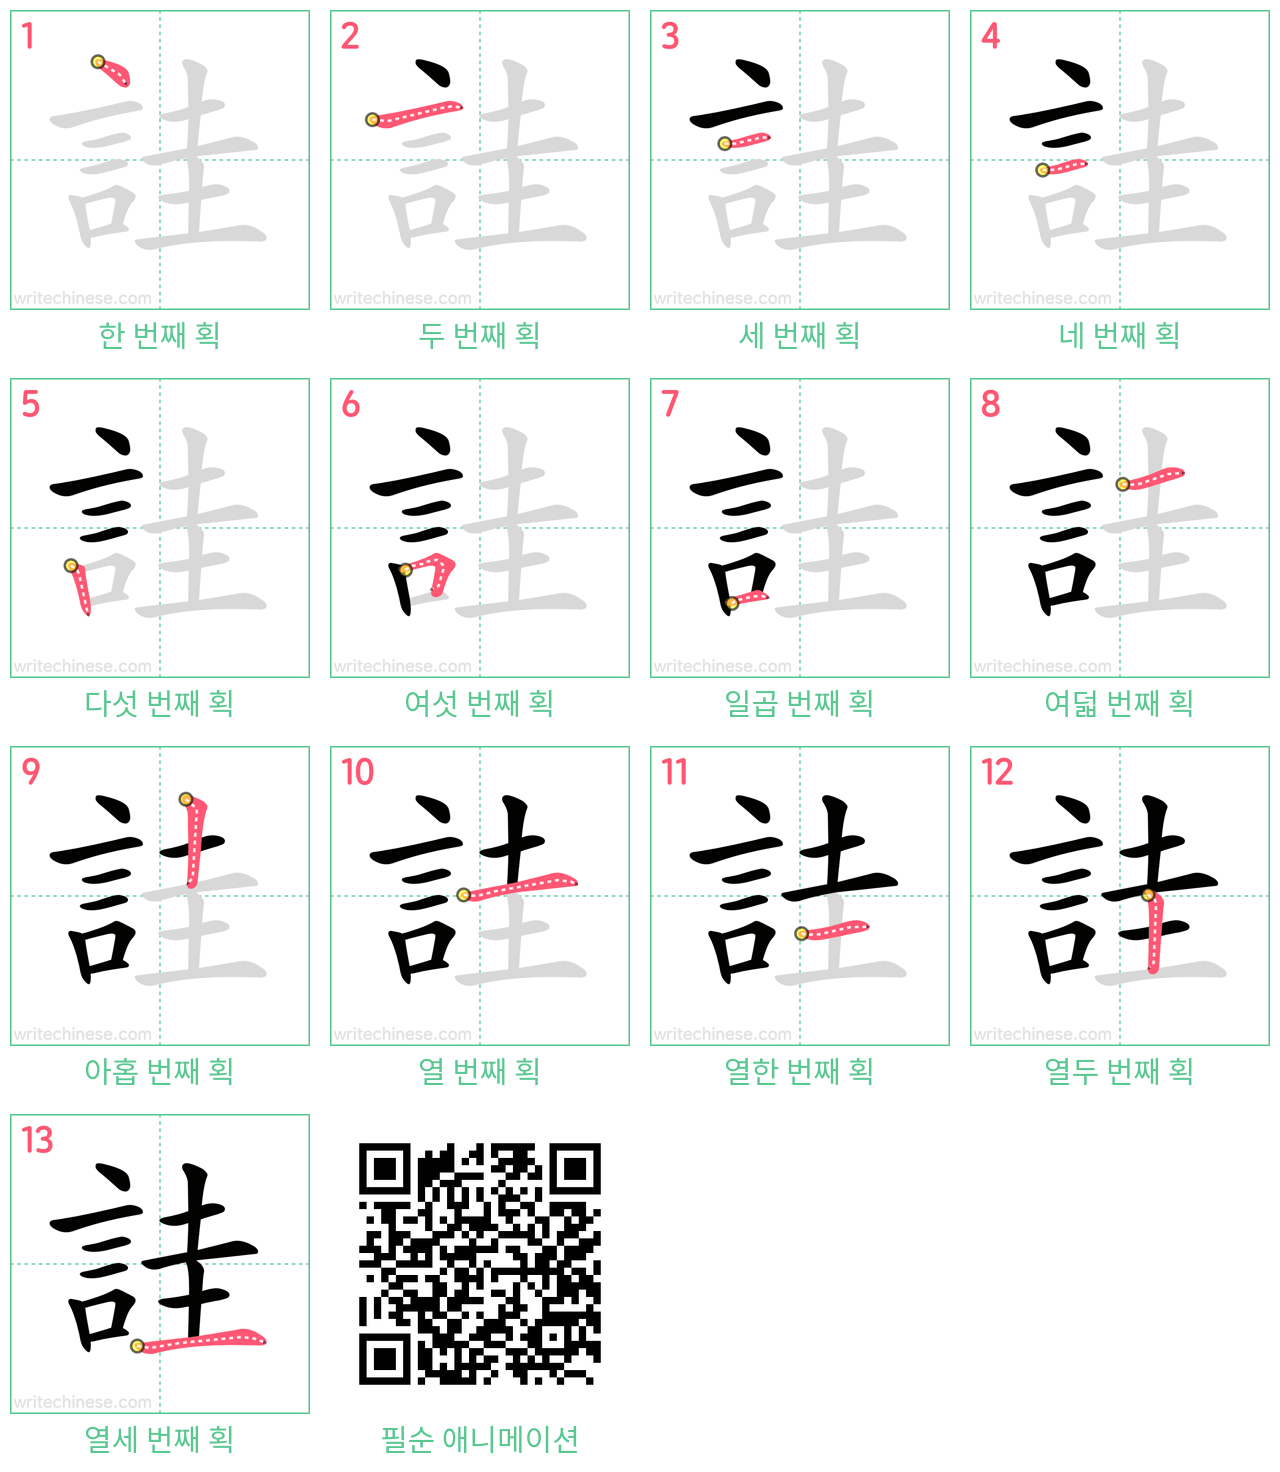 詿 step-by-step stroke order diagrams